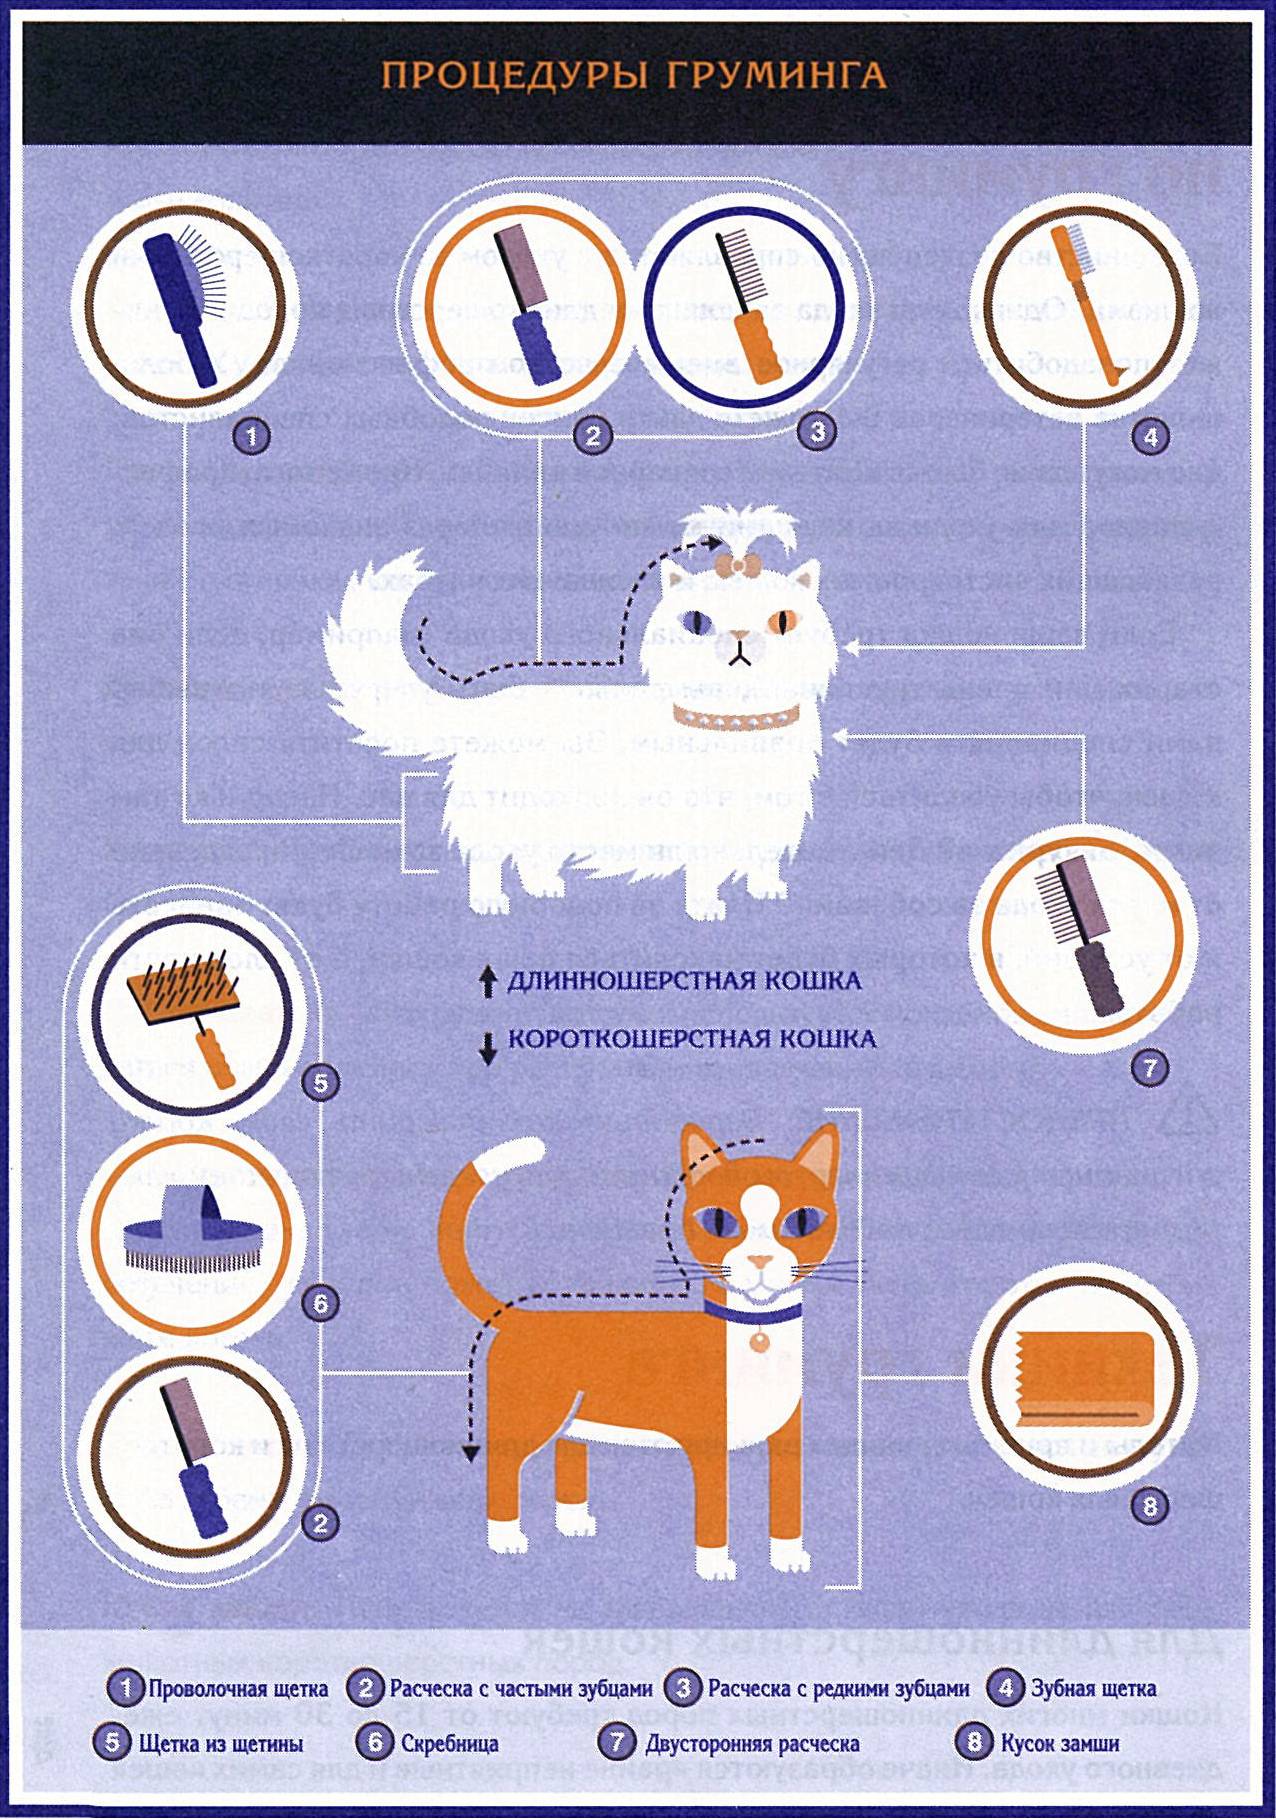 Правила и рекомендации по правильному уходу за домашними кошками и котами